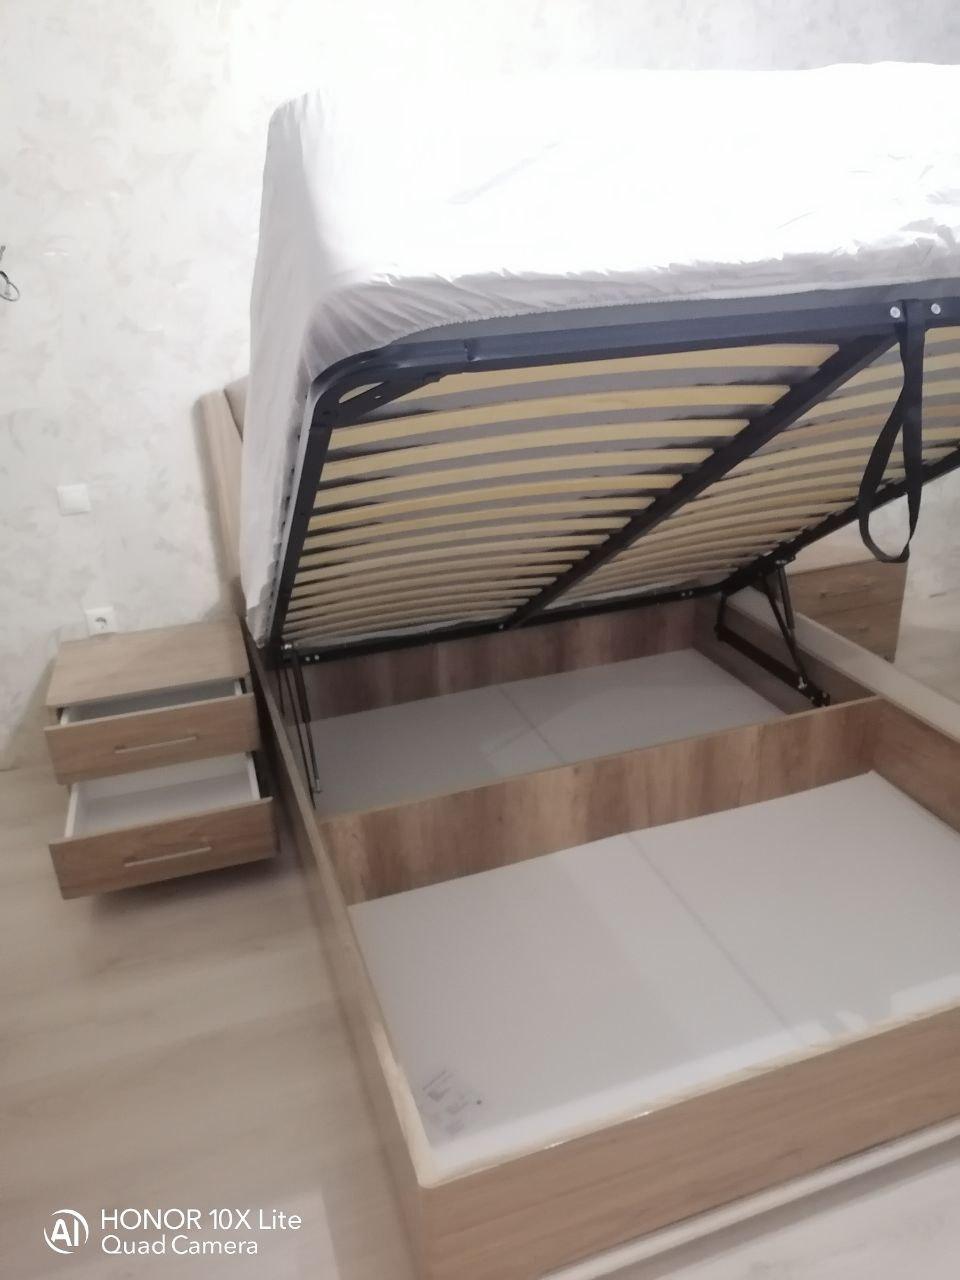 Односпальная кровать "Милан" 90 х 200 с подъемным механизмом цвет орех серебро / best 06